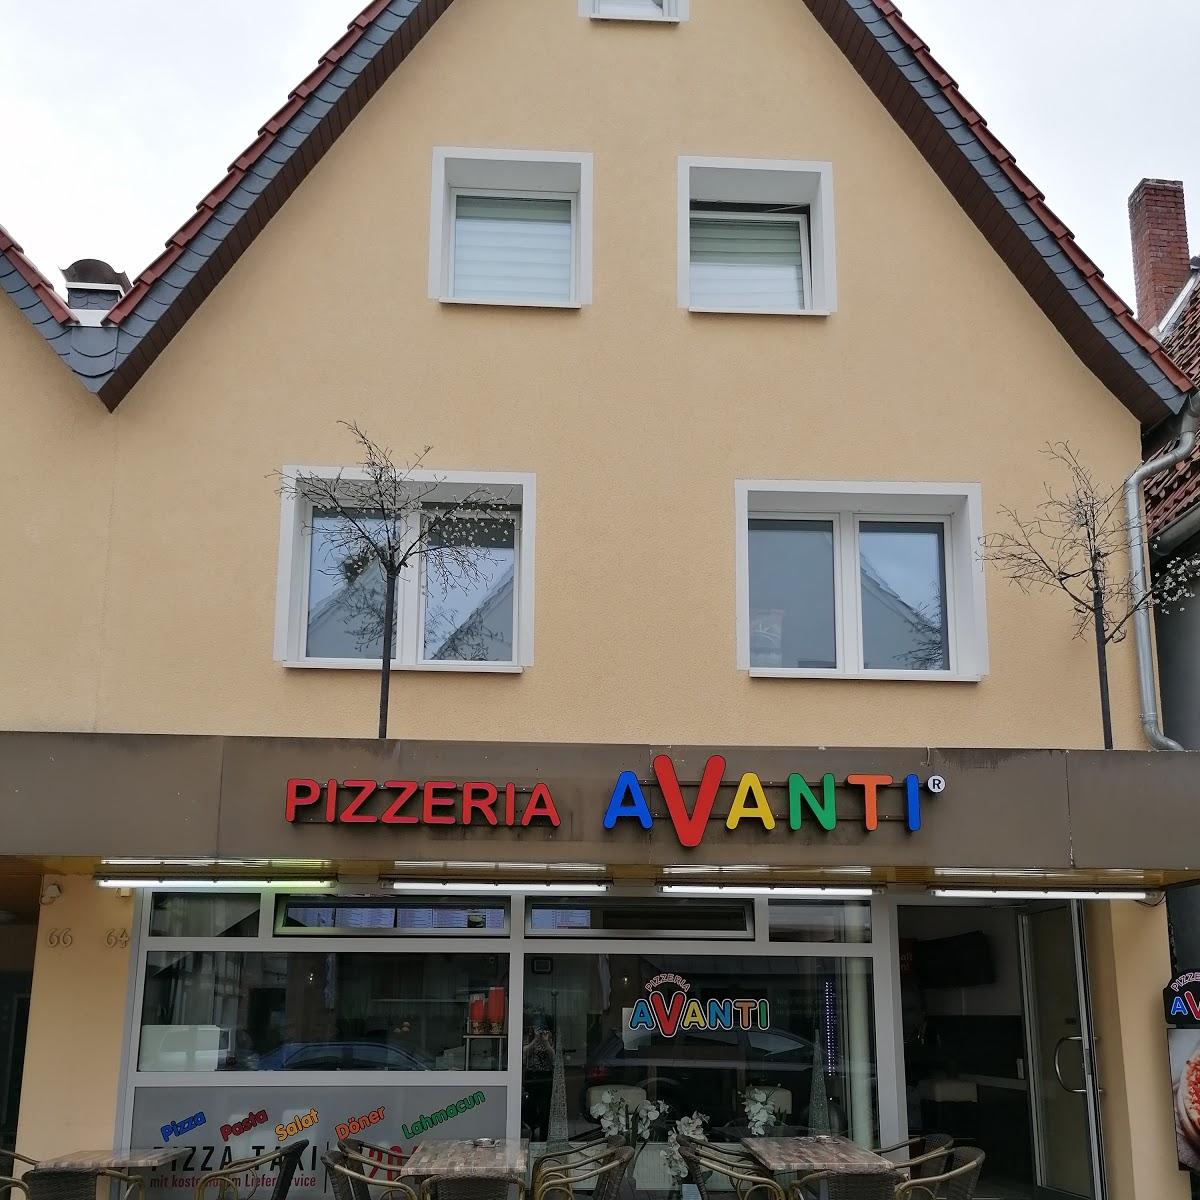 Restaurant "Pizzeria Avanti" in Horn-Bad Meinberg